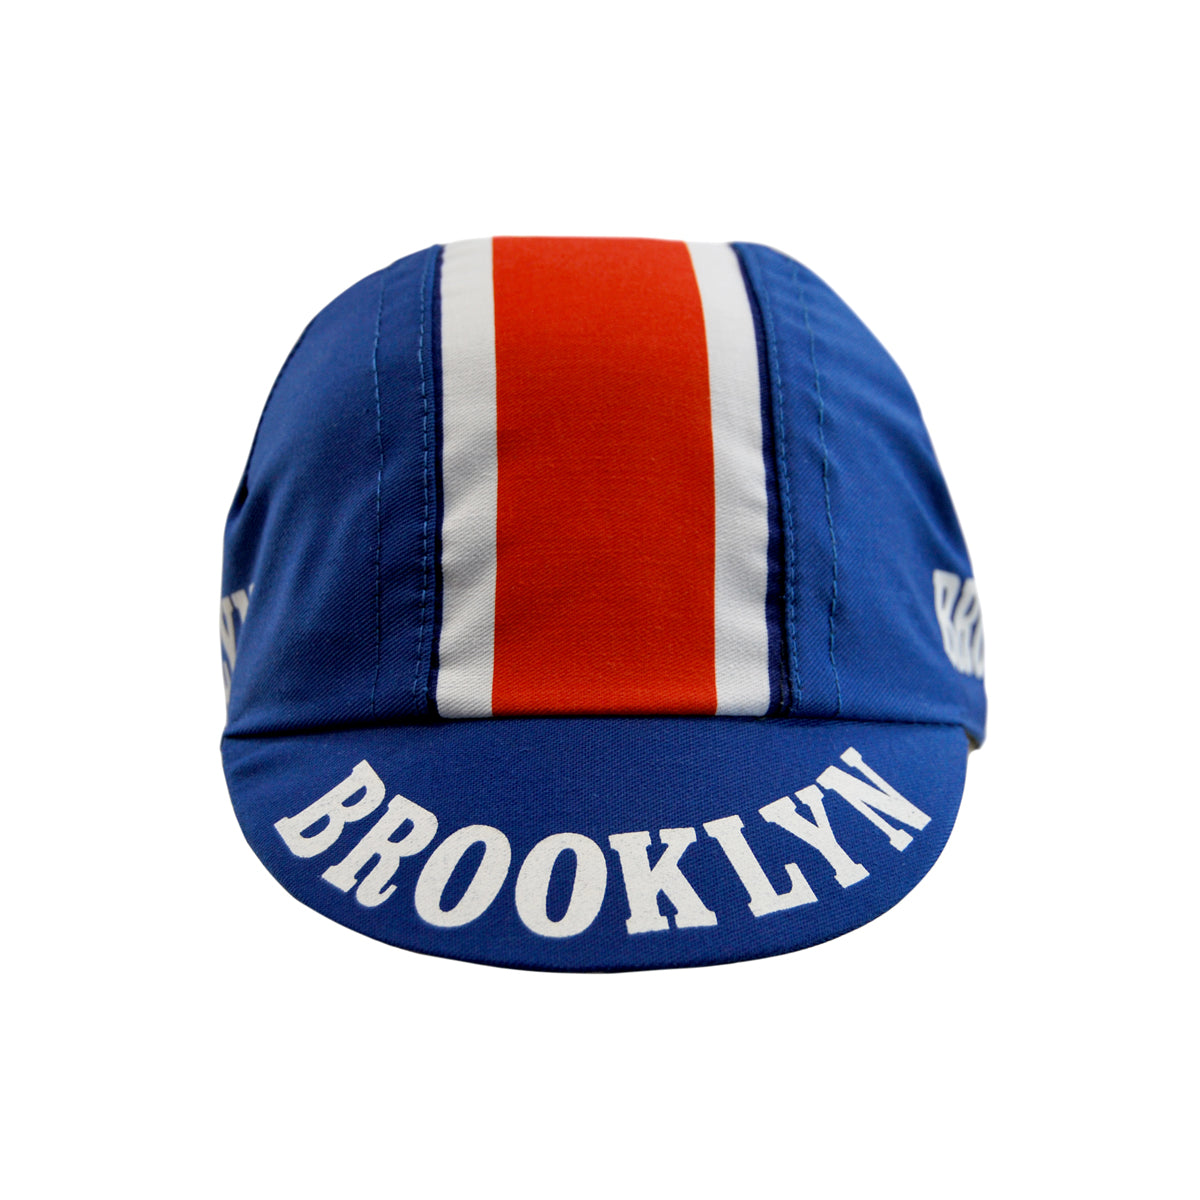 Brooklyn Retro Cycling Cap - Blue/Red